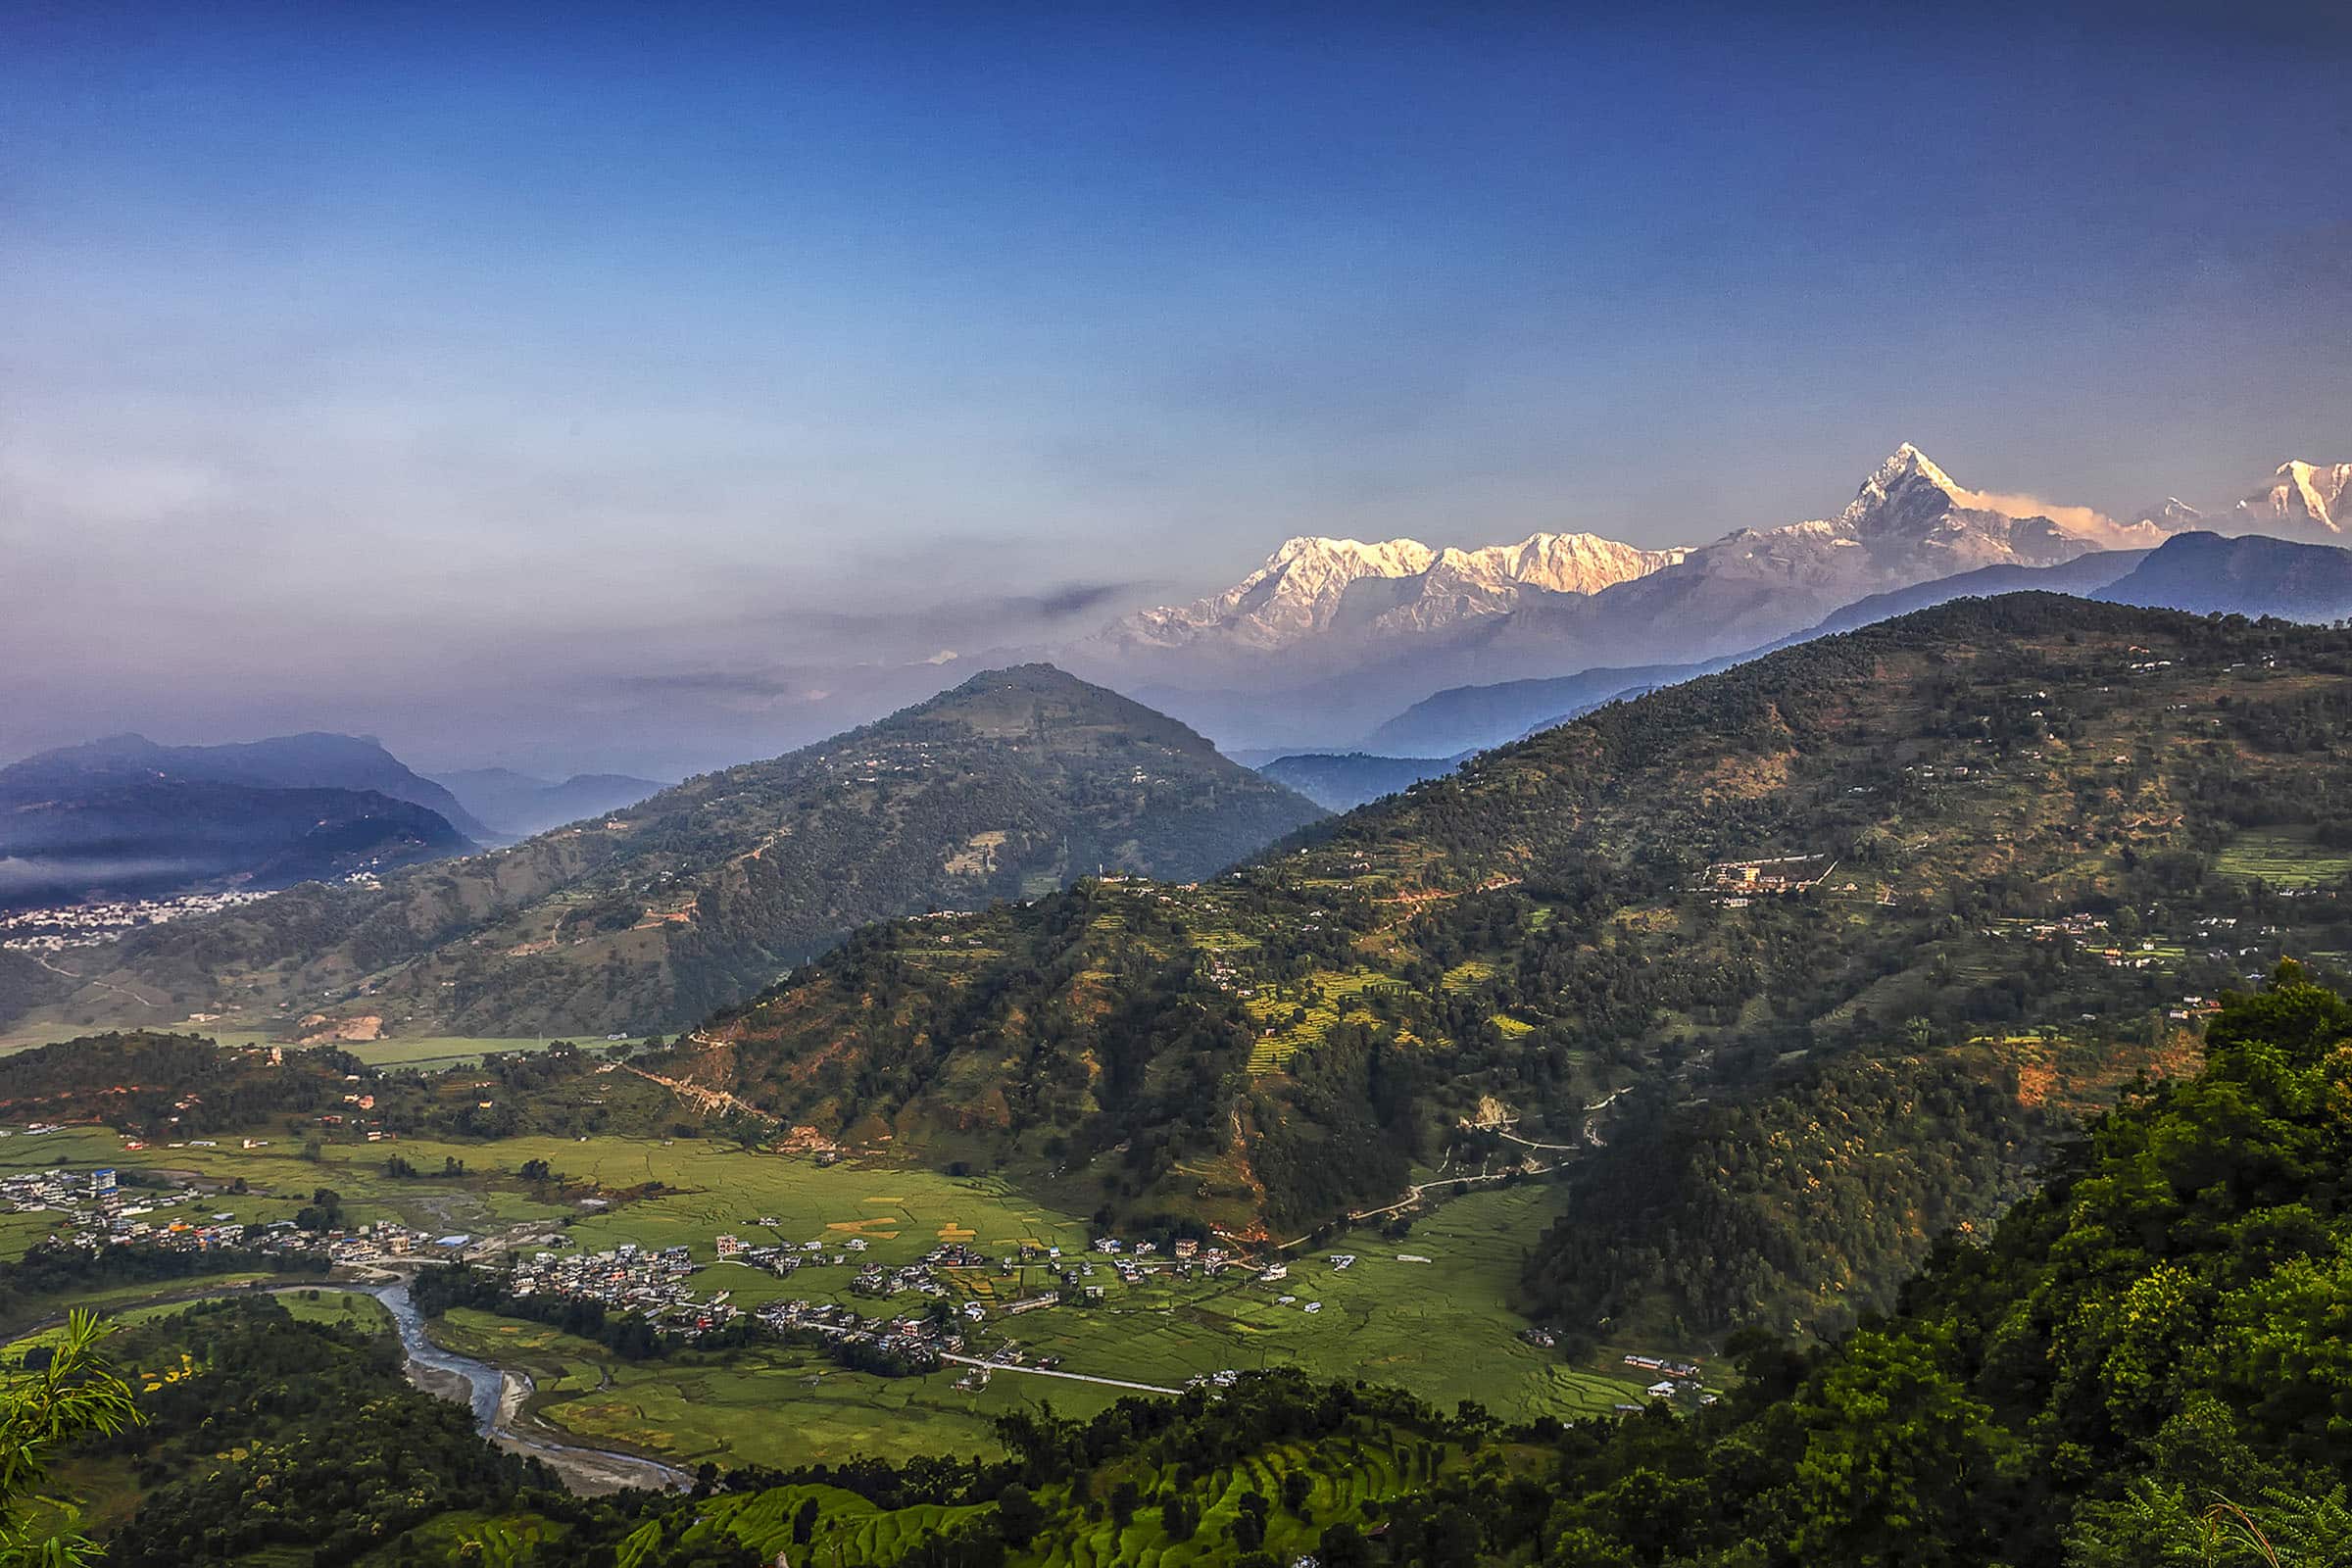 trekking trips in nepal